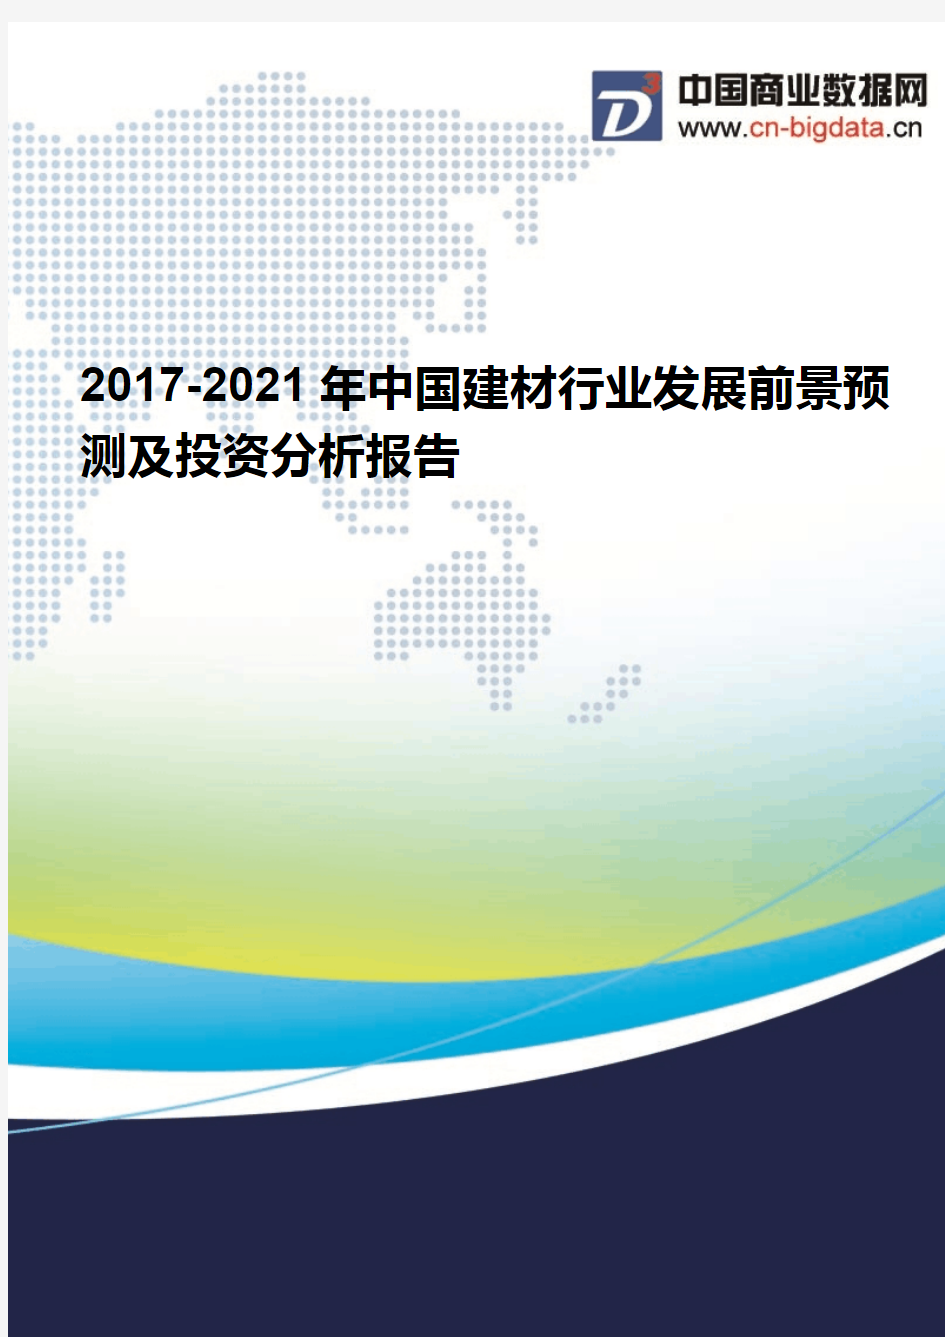 2017-2021年中国建材行业发展前景预测及投资分析报告